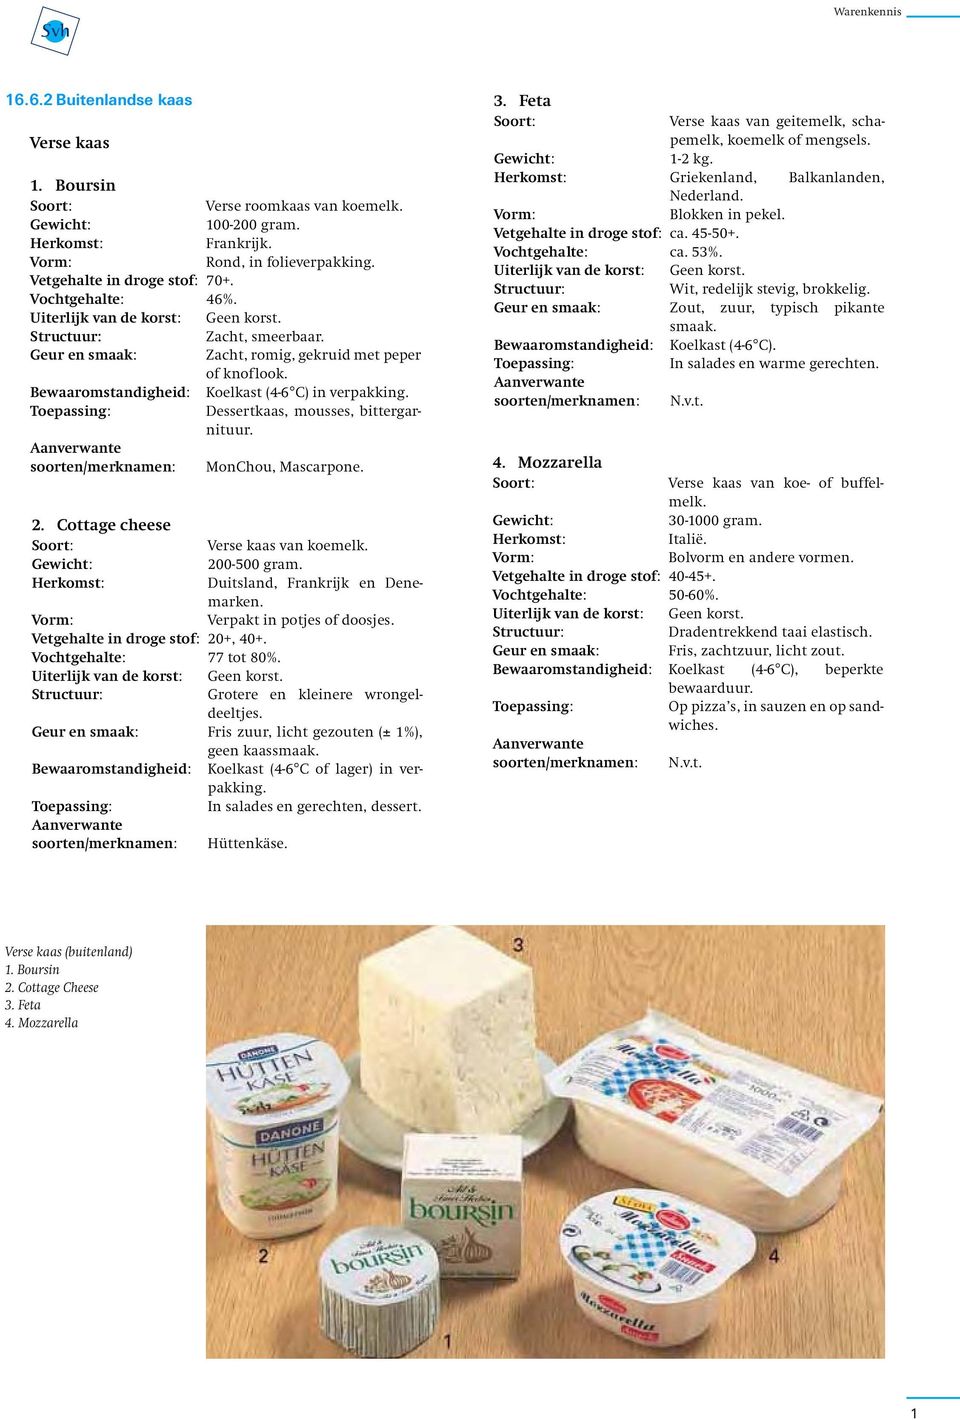 Cottage cheese Verse kaas van koemelk. 200-500 gram. Duitsland, Frankrijk en Denemarken. Verpakt in potjes of doosjes. Vetgehalte in droge stof: 20+, 40+. Vochtgehalte: 77 tot 80%.